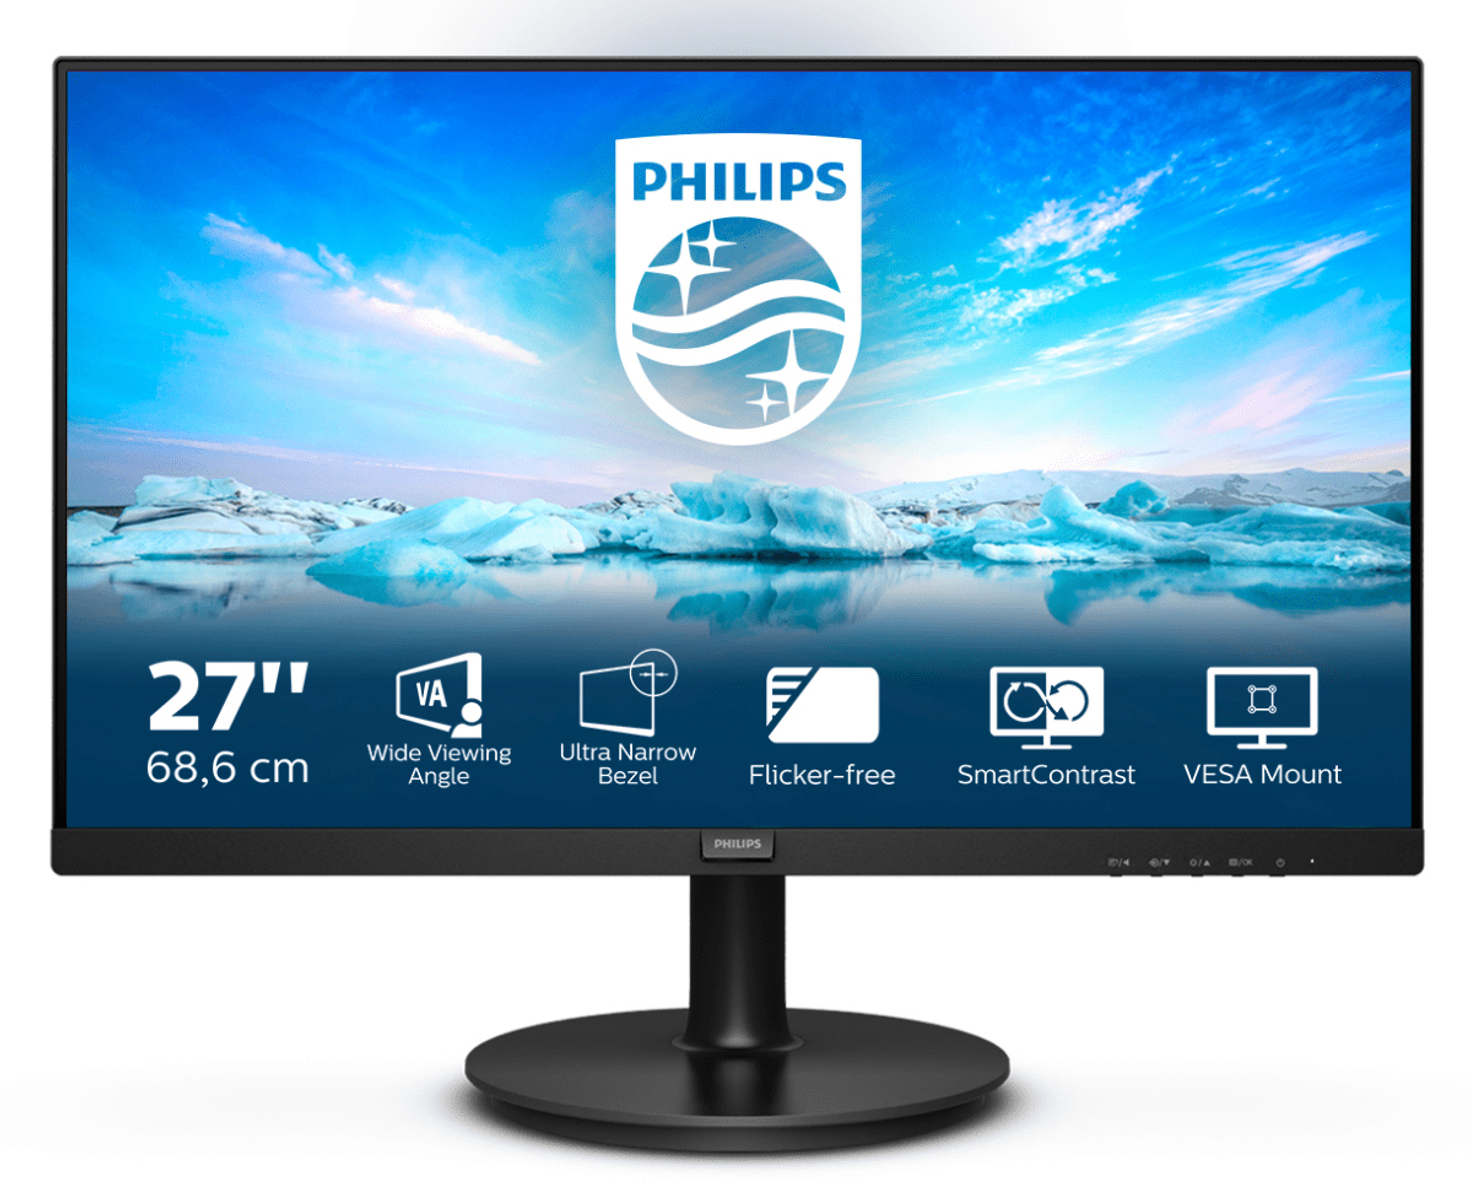 Philips Monitors 271v8la fhd de 27 pulgadas adaptivesync 1920 x 1080 75 hz vga hdmi color negro led fullhd 271v8la00 4 686